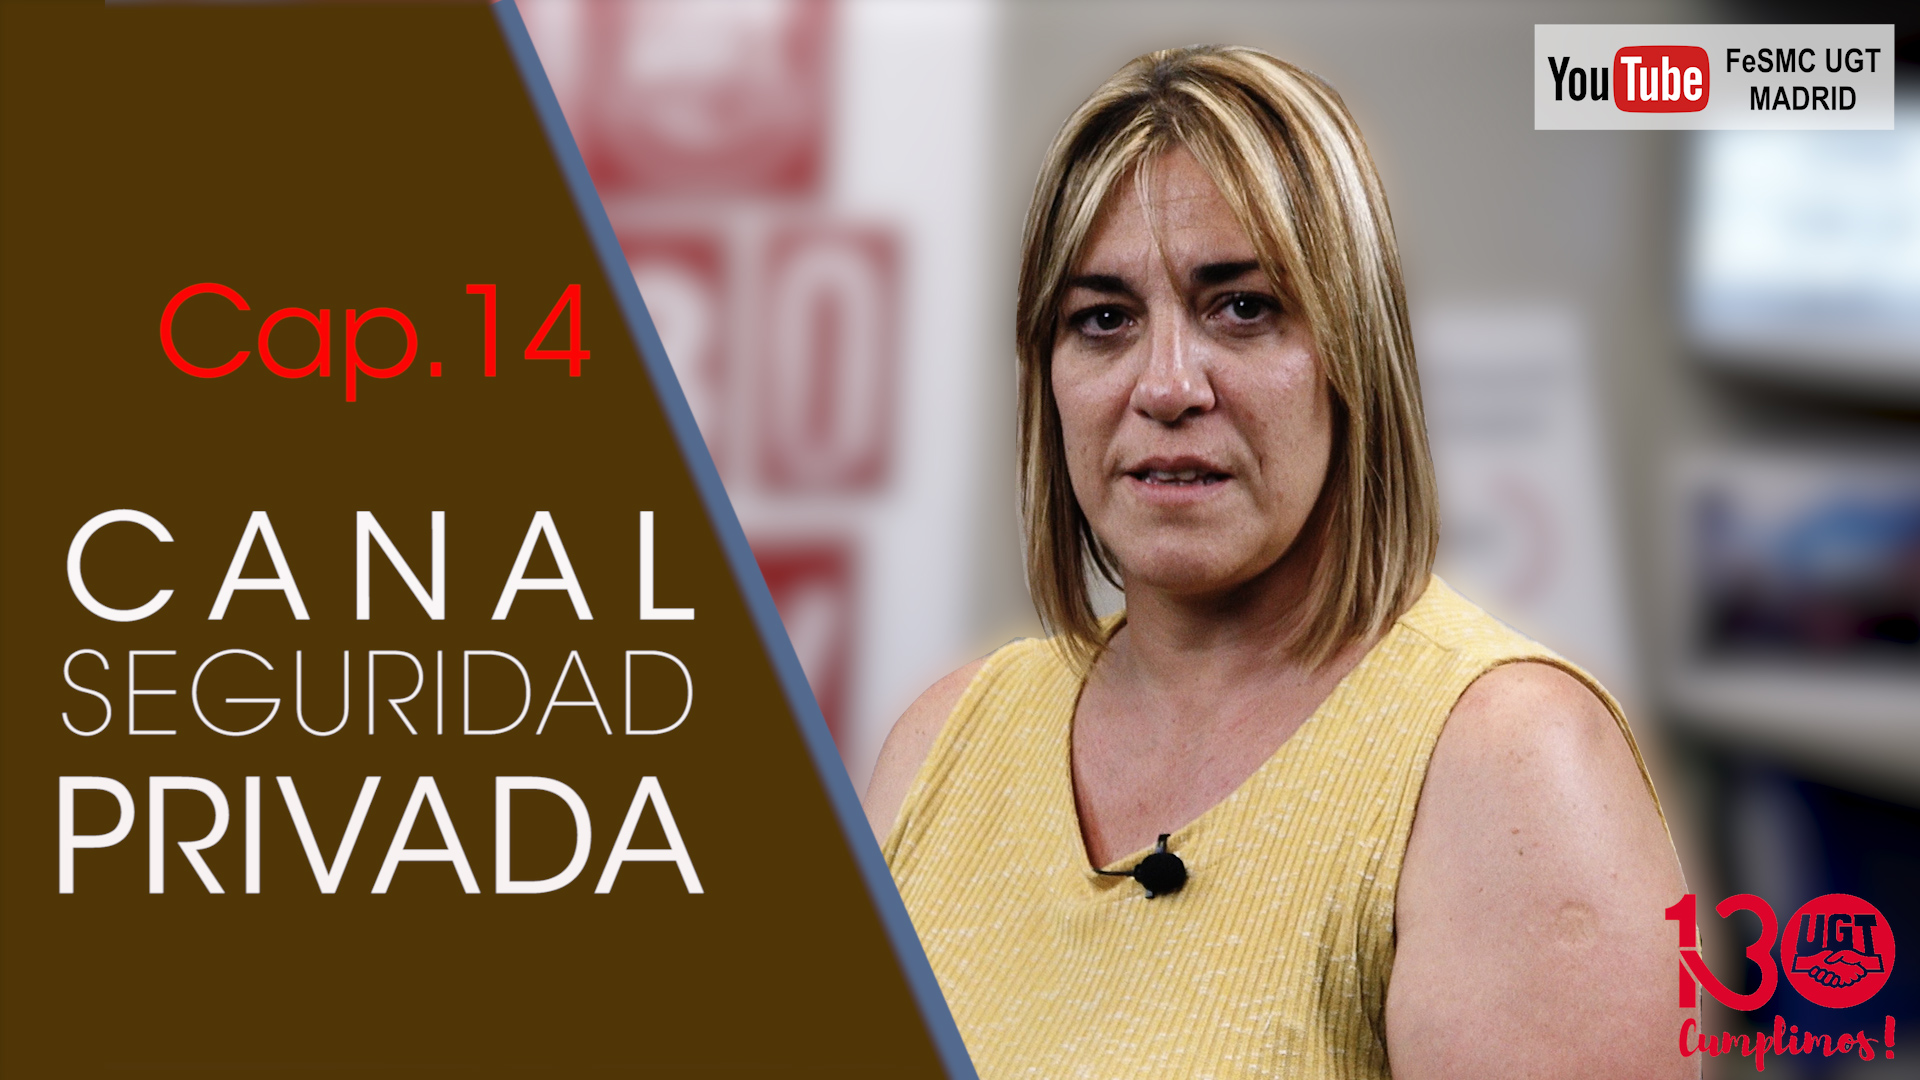 VIDEO | CANAL DE NOTICIAS DE SEGURIDAD PRIVADA FeSMC UGT MADRID (Cap. 14)